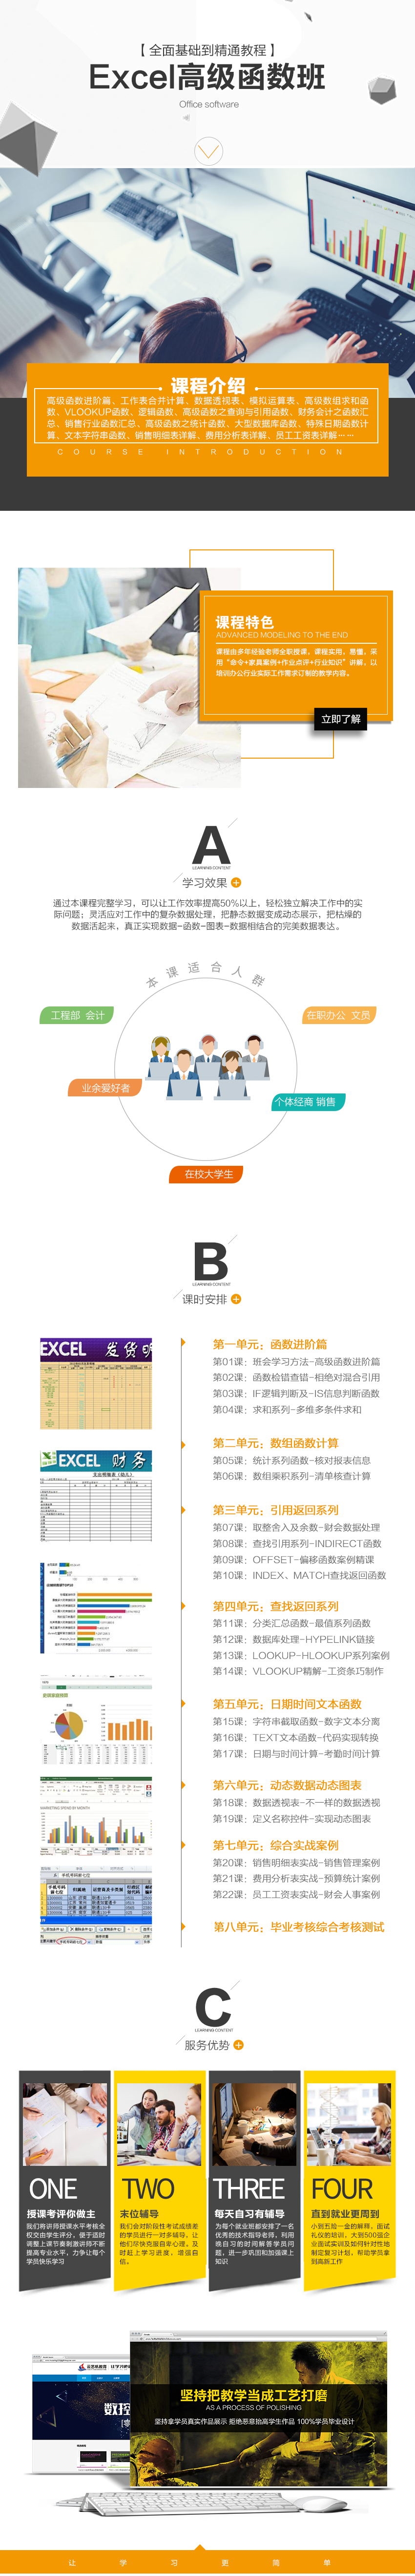 Excel高级函数班_看图王.jpg